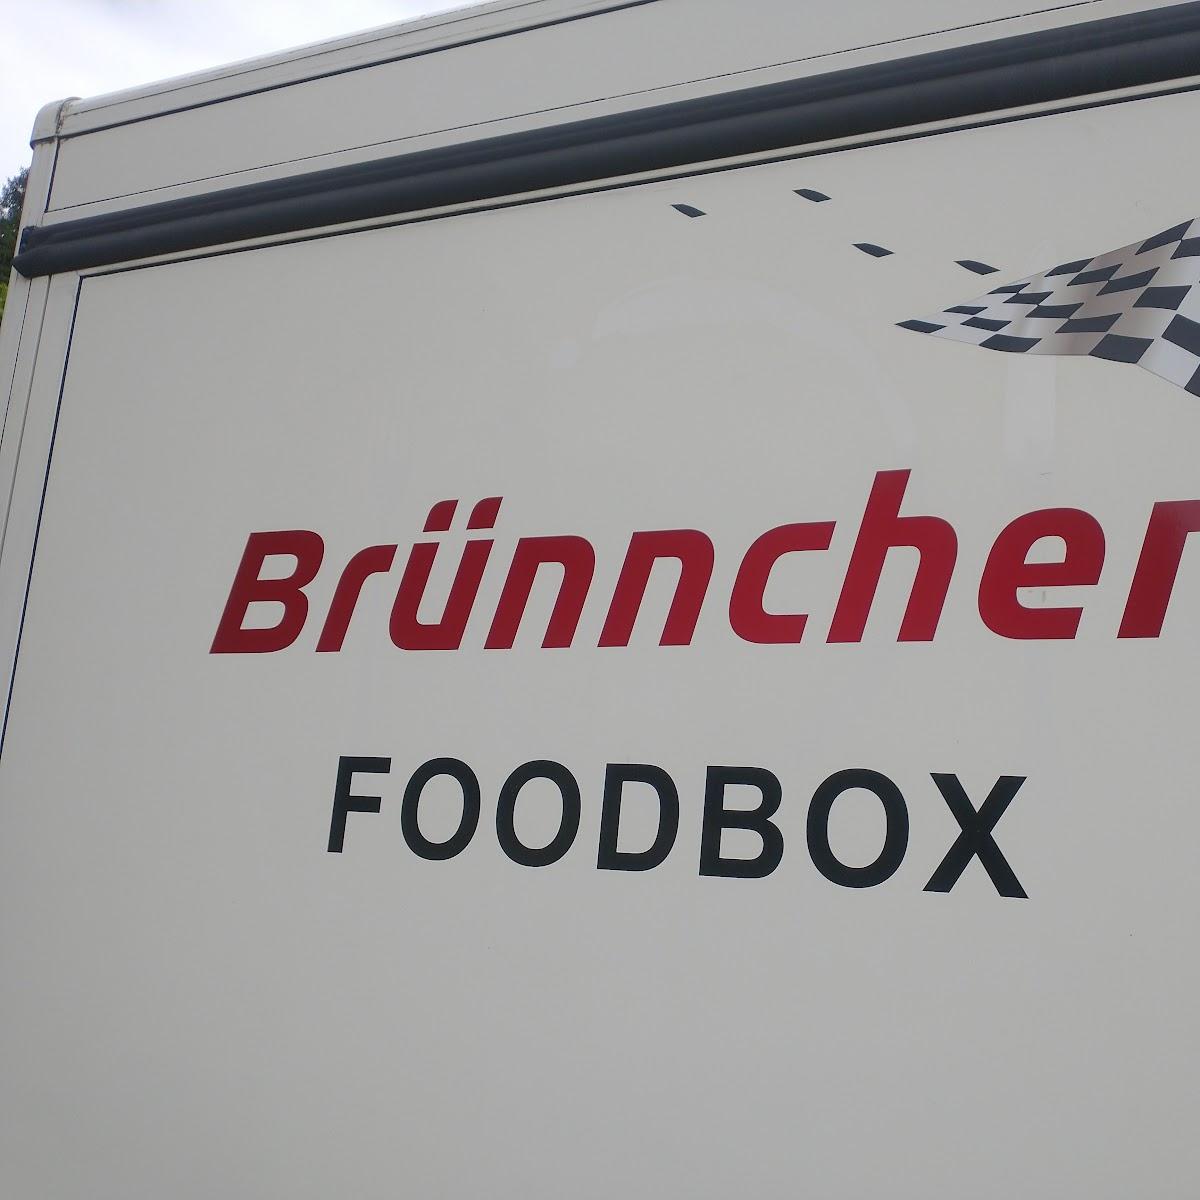 Restaurant "Brünnchen Foodbox" in Herschbroich